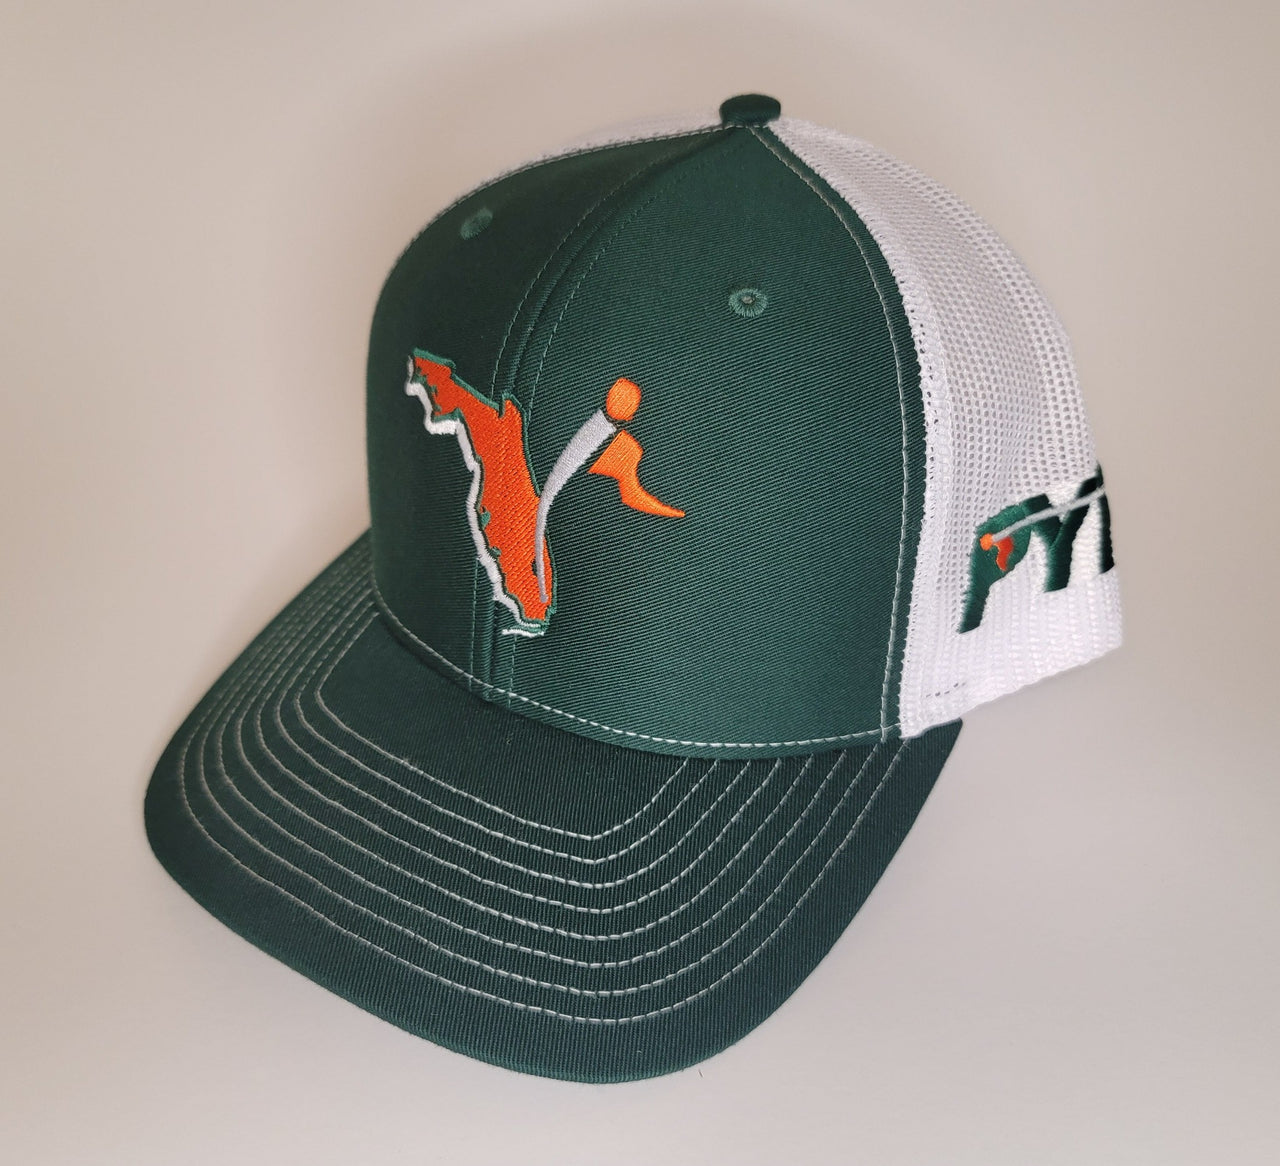 CXII Mesh Hat - Miami, Florida 2.0 (Orange State/Green-White)